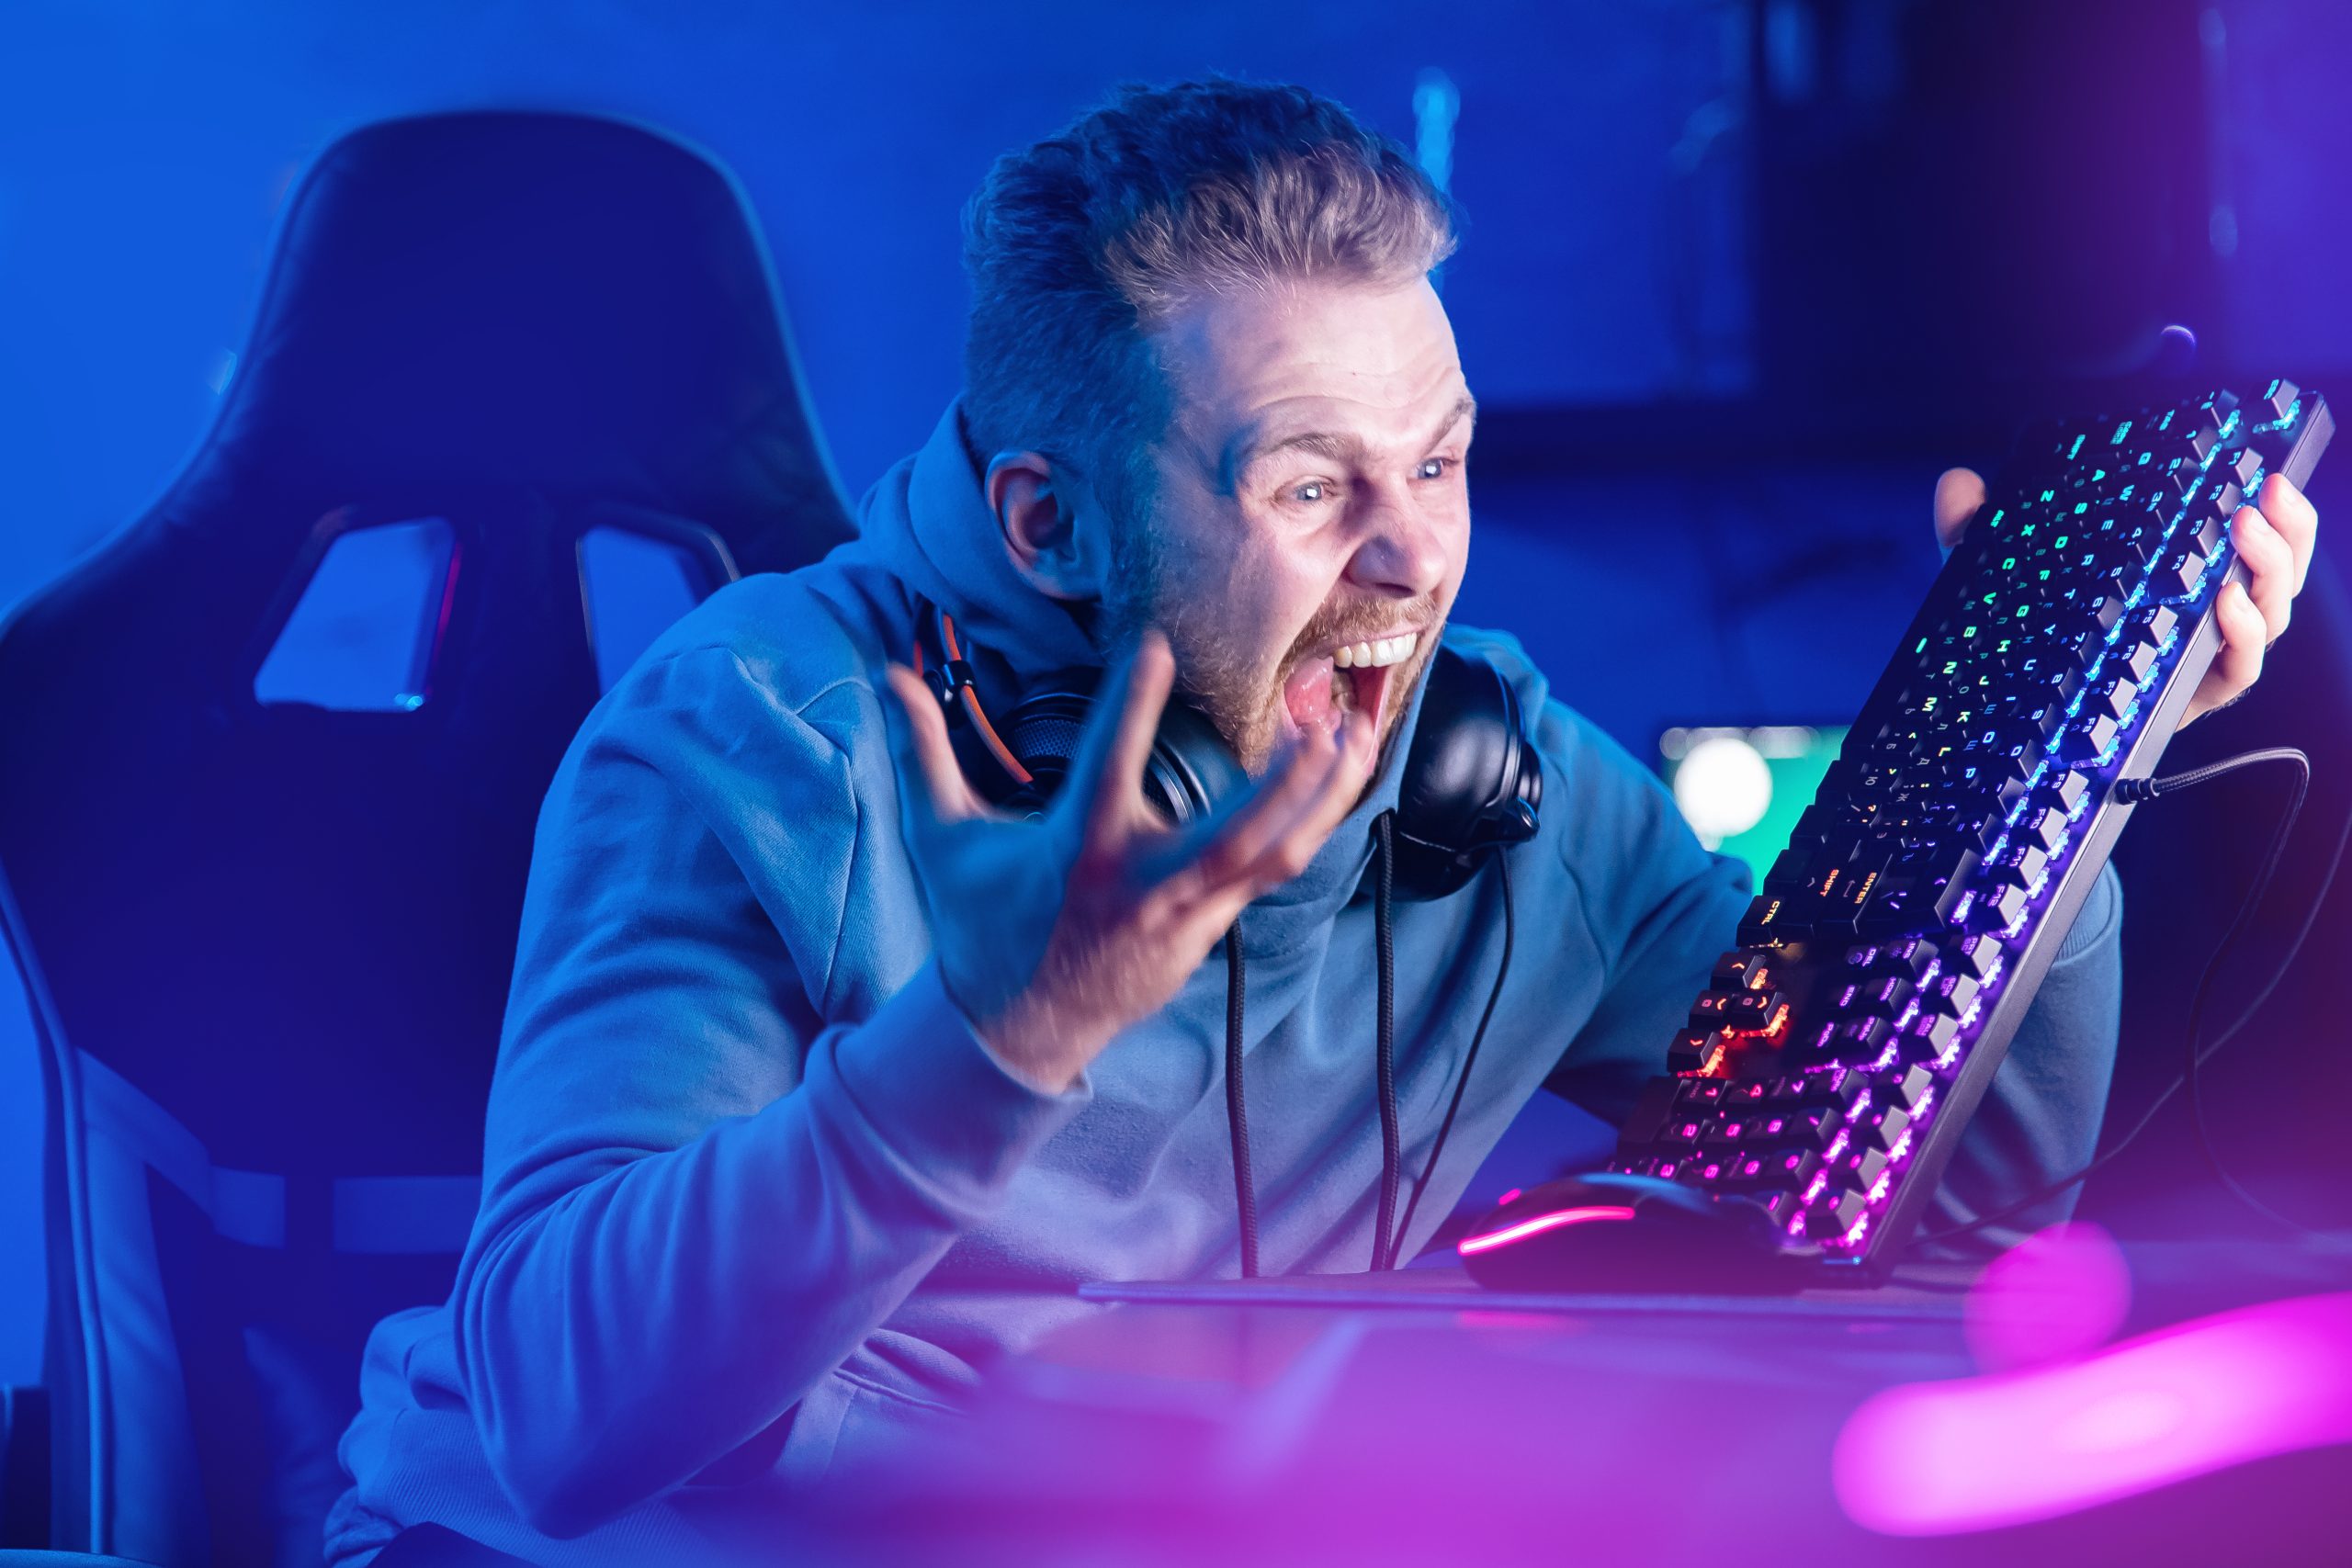 Imagem mostra um gamer zangado, segurando seu teclado e gritando com o monitor